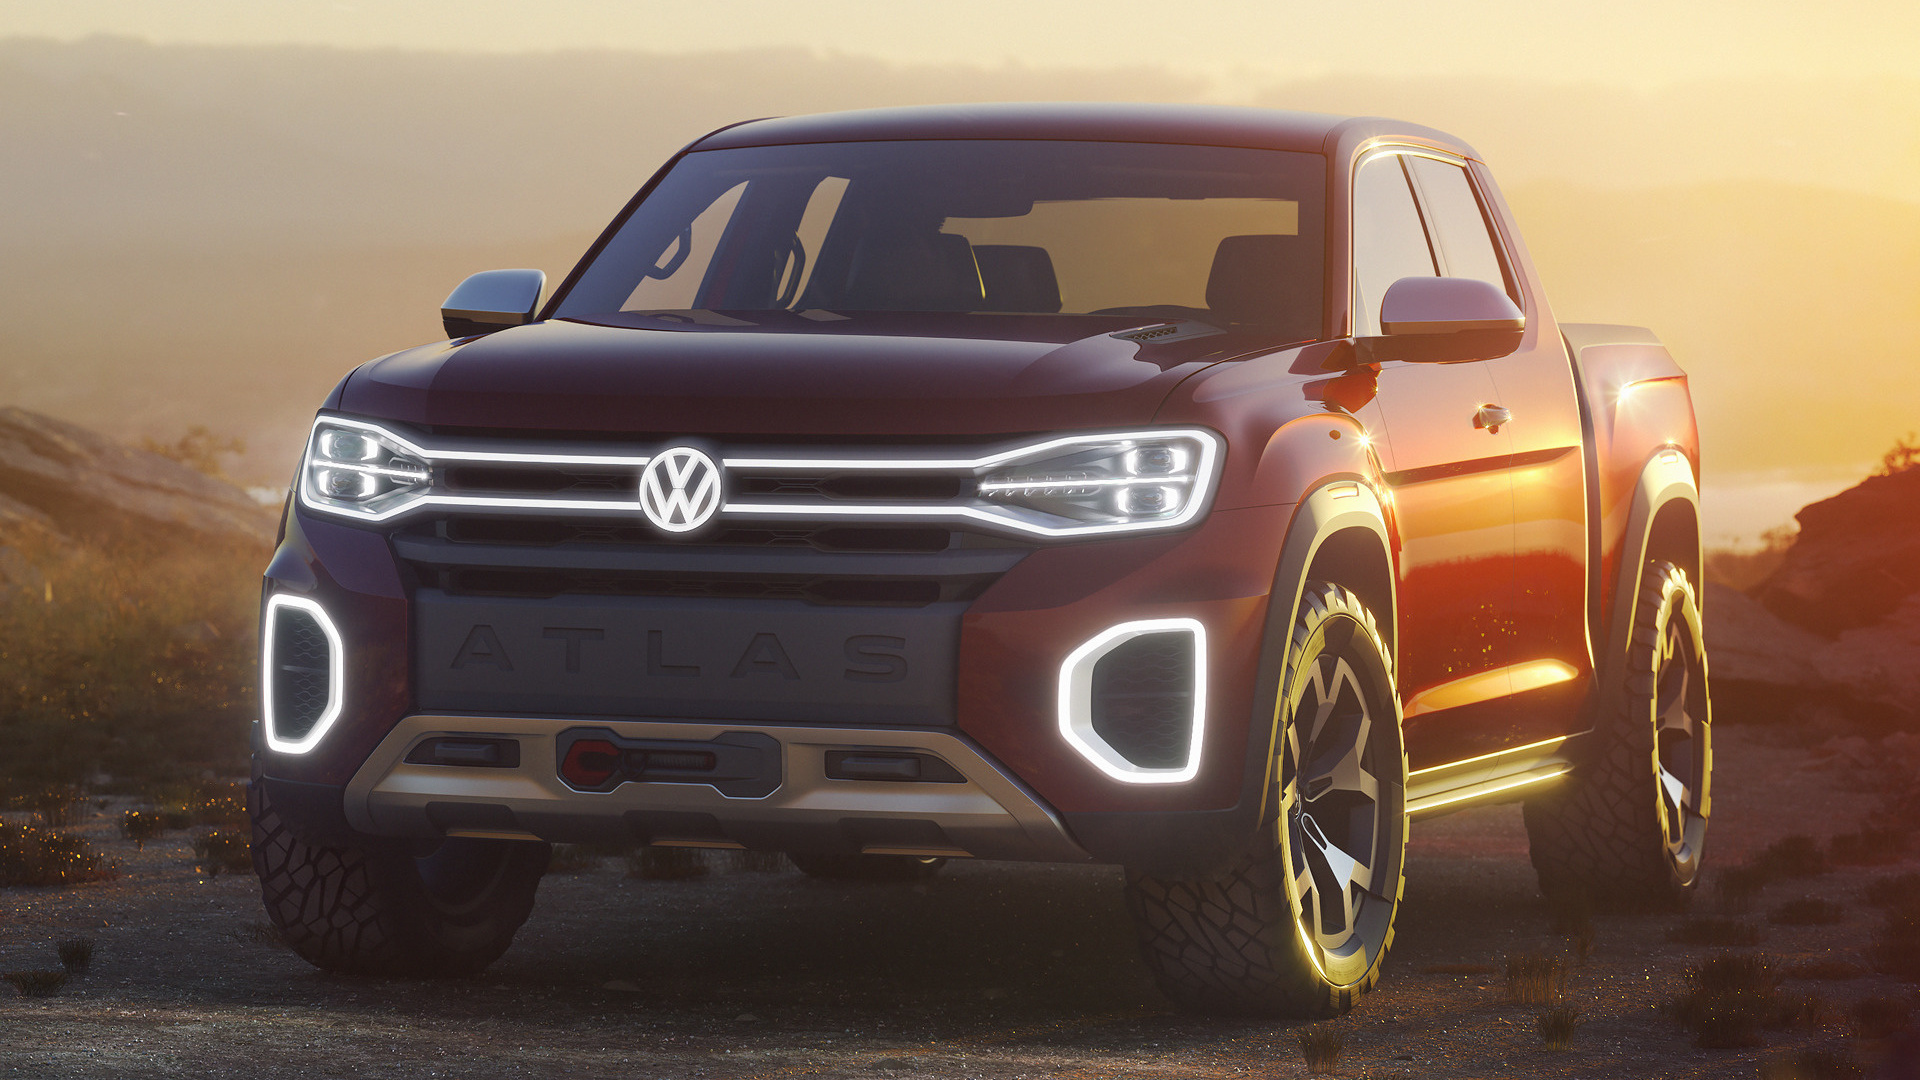 2018 Volkswagen Atlas, Tanoak pickup truck, Concept wallpapers HD, 1920x1080 Full HD Desktop